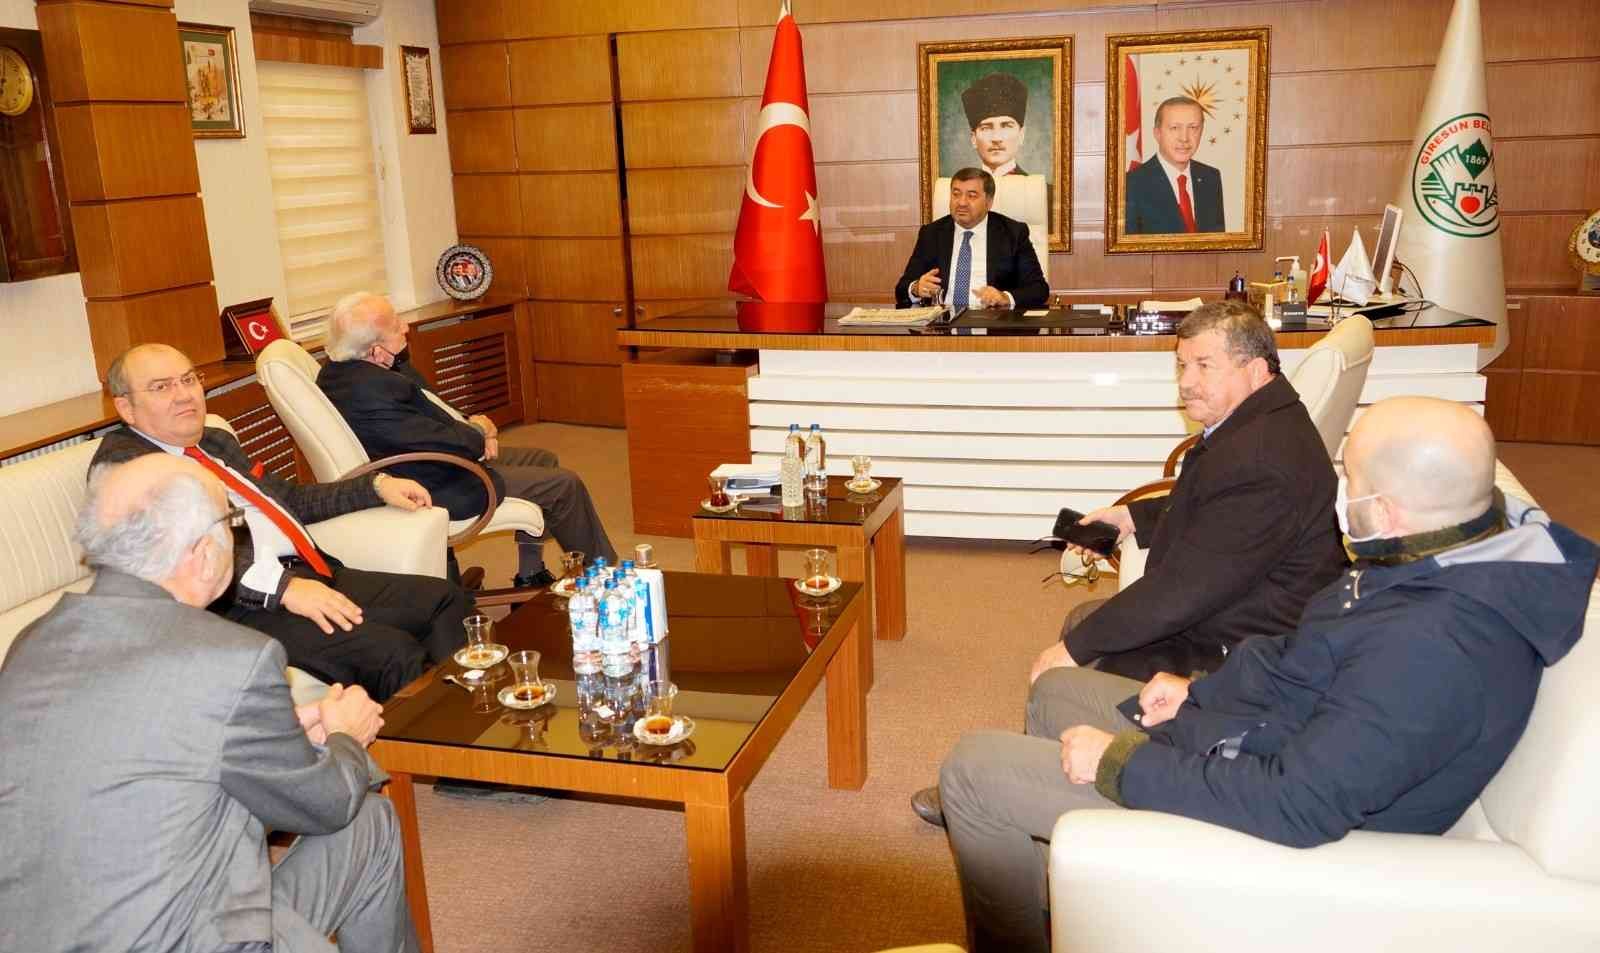 Giresun Belediye Başkanı Şenlikoğlu’na Turizm ve Tanıtma Derneğinden ziyaret #giresun